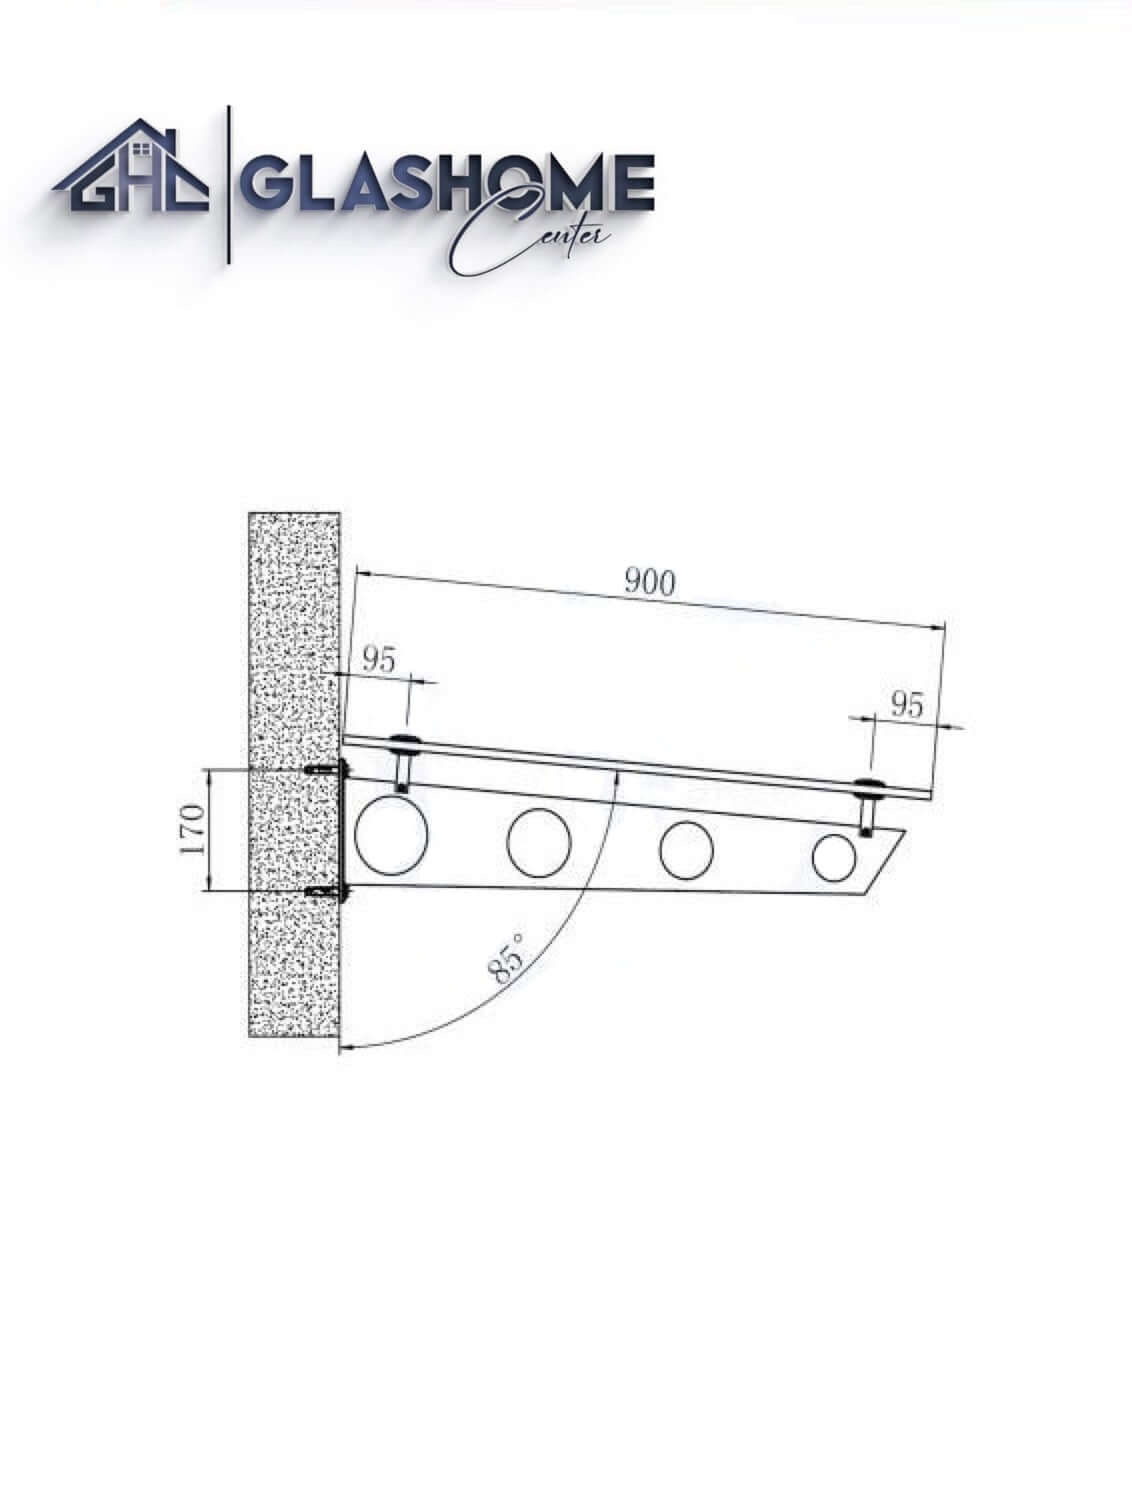 GlasHomeCenter - Glasvordach - Grauglas - 230x90cm - 13,1mm VSG - incl. 3 Edelstahlhalterungen variante "Stoccolma"